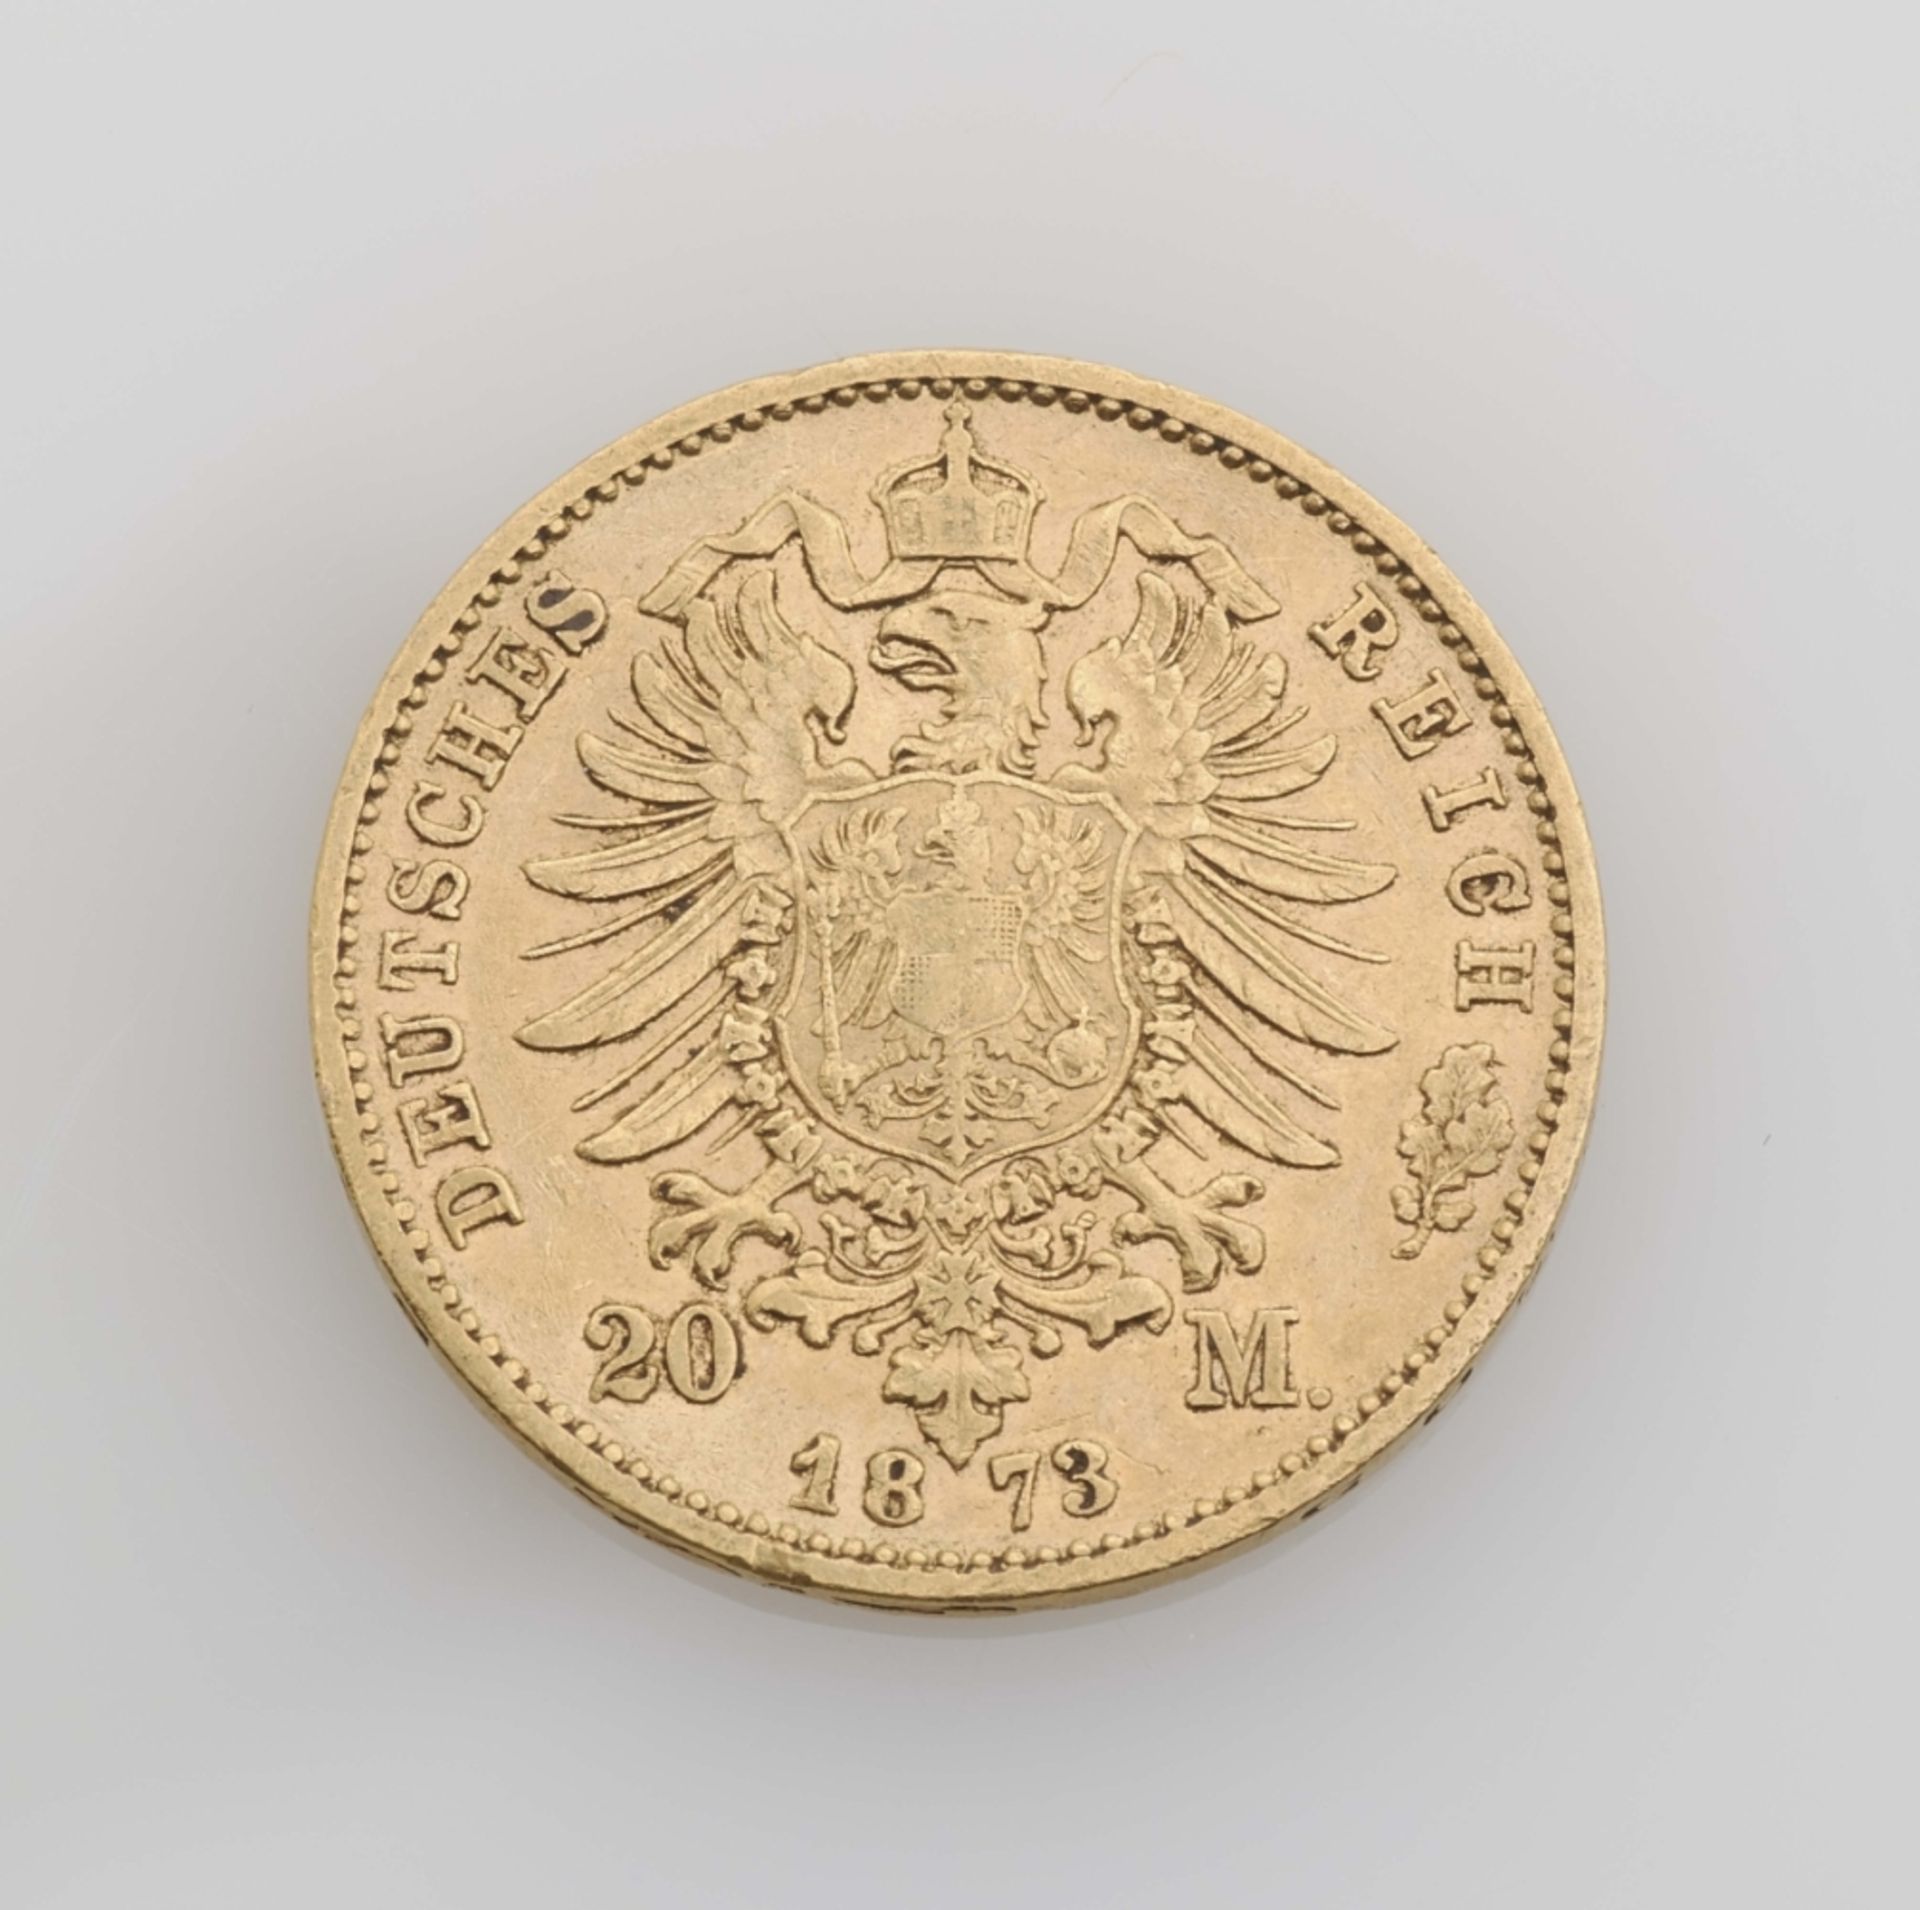 Münze. Königreich Bayern. Ludwig II. (1864-1886). 20 Mark 1873. D. Münzstätte München. Sehr schöne - Bild 2 aus 2